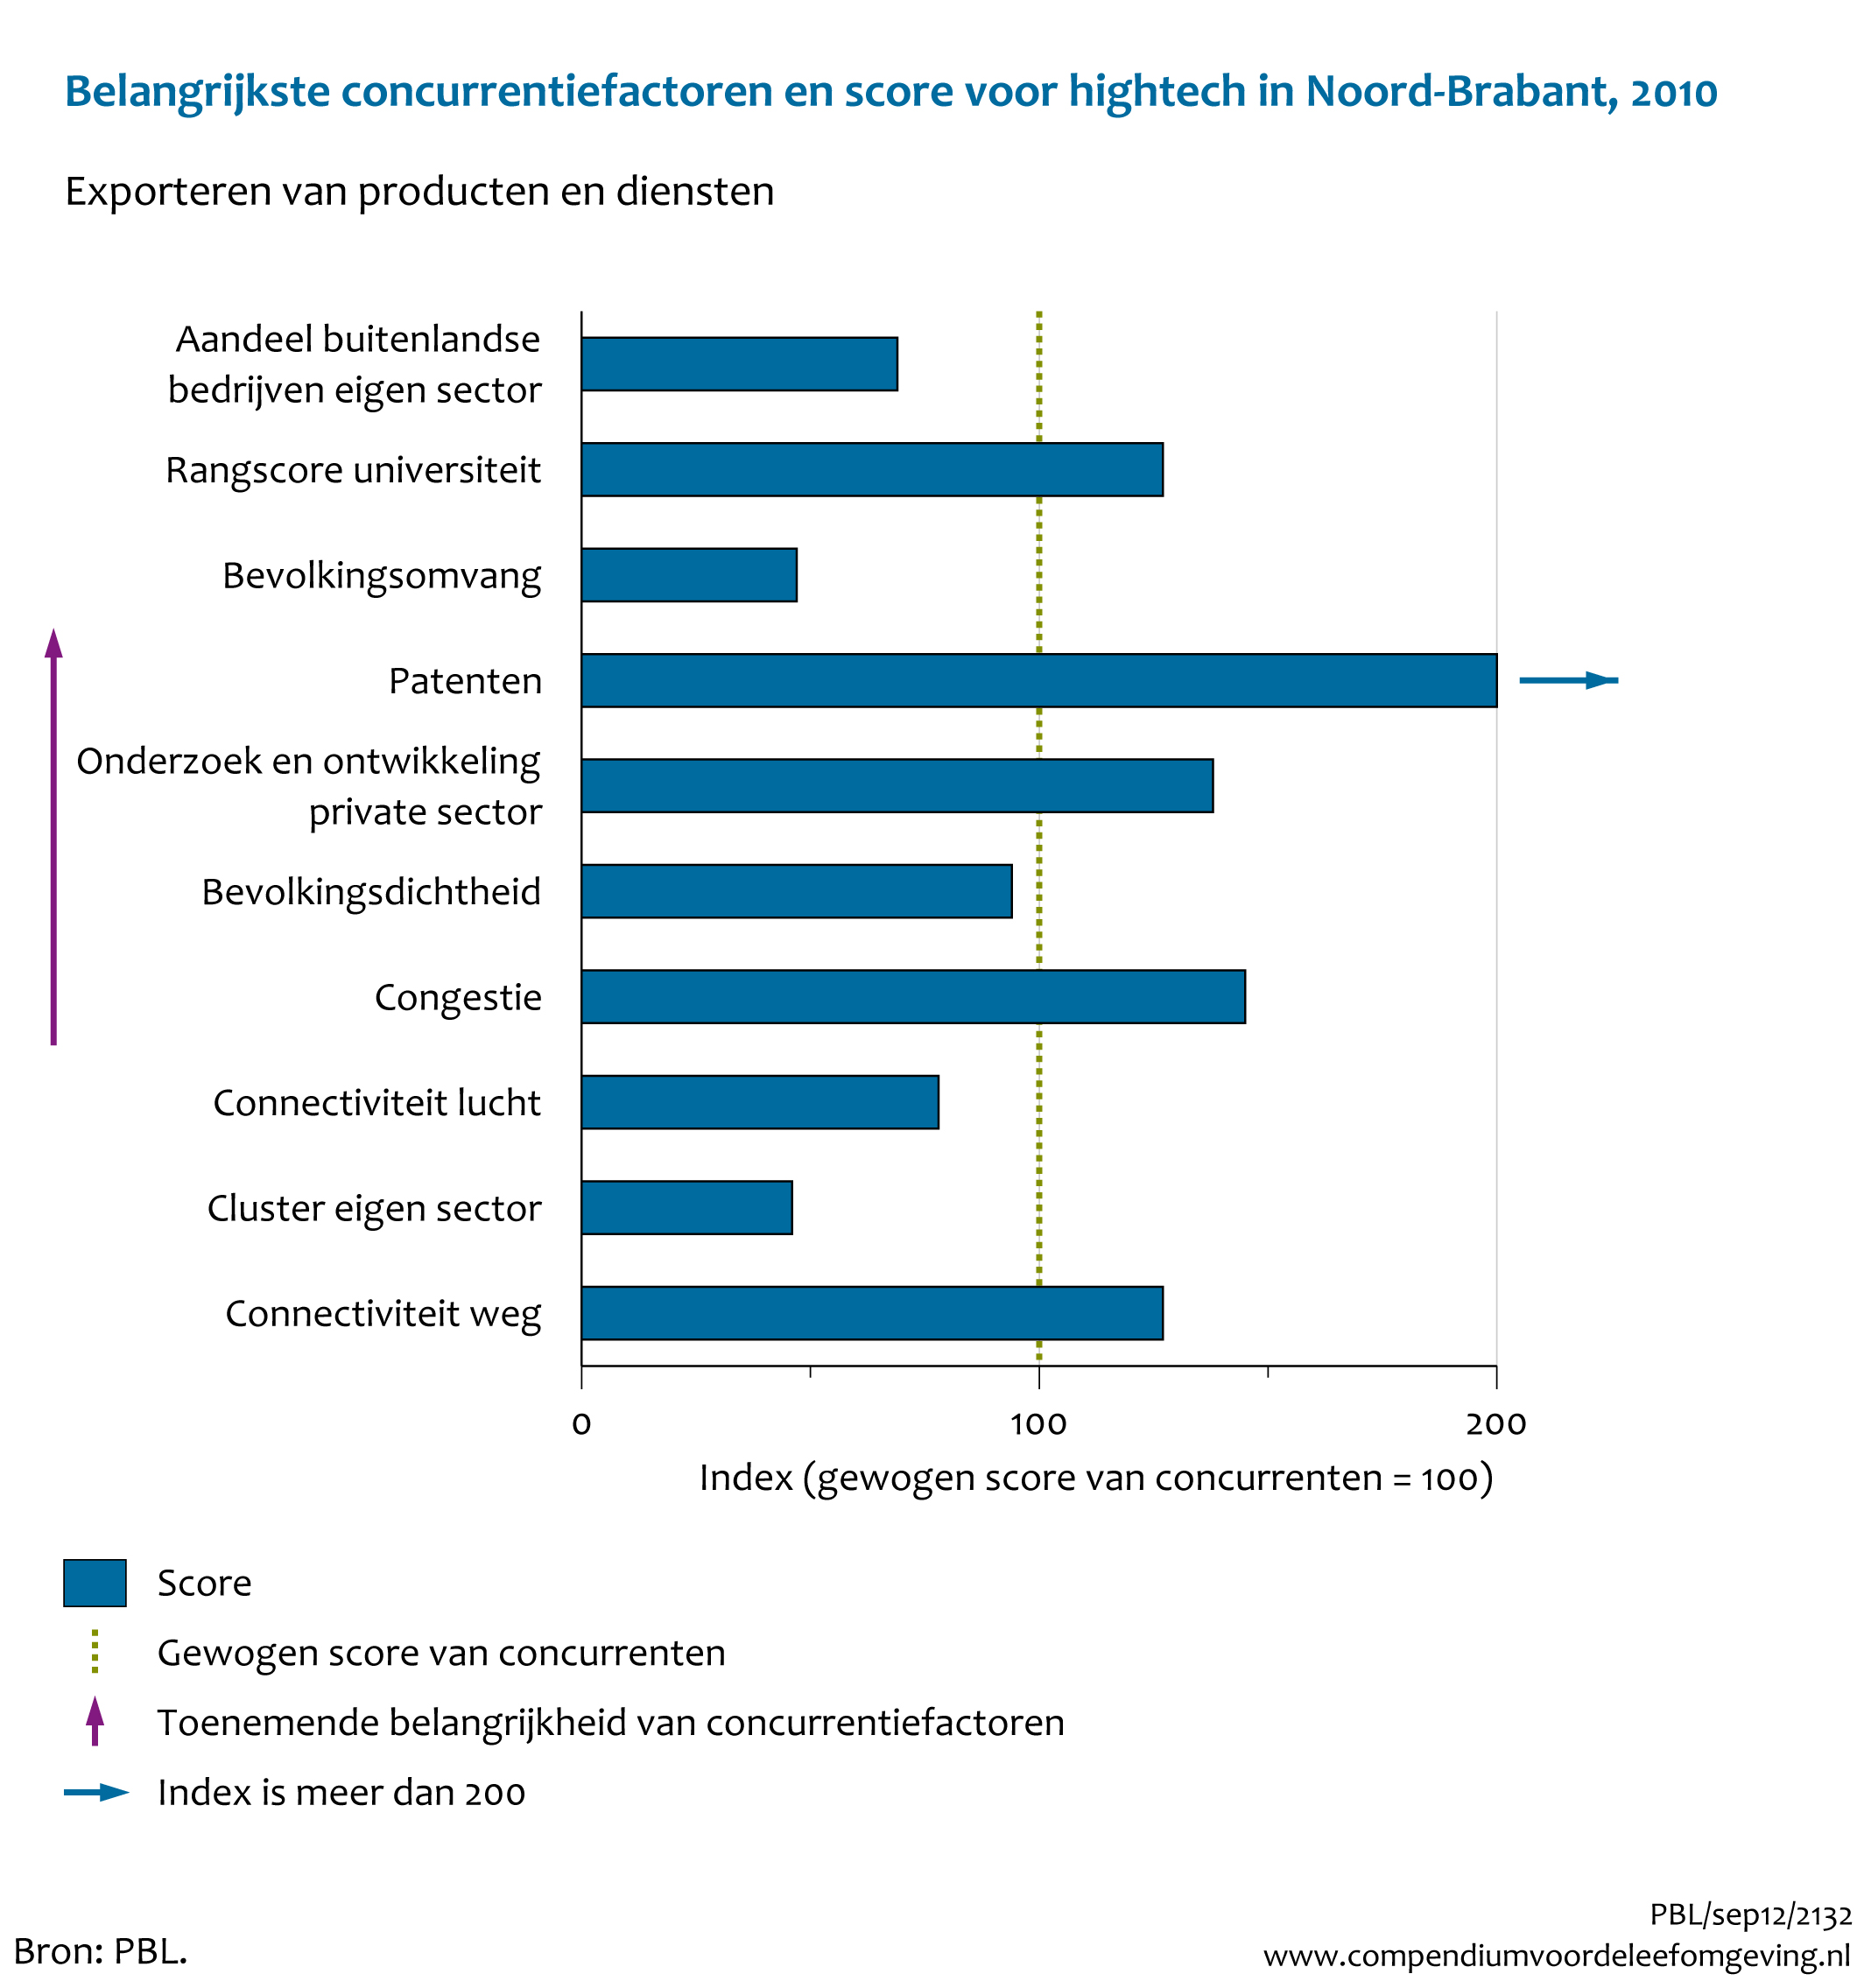 Figuur  Belangrijkste concurrentiefactoren en score voor hightech bij export van producten en diensten in Noord-Brabant, 2010. In de rest van de tekst wordt deze figuur uitgebreider uitgelegd.